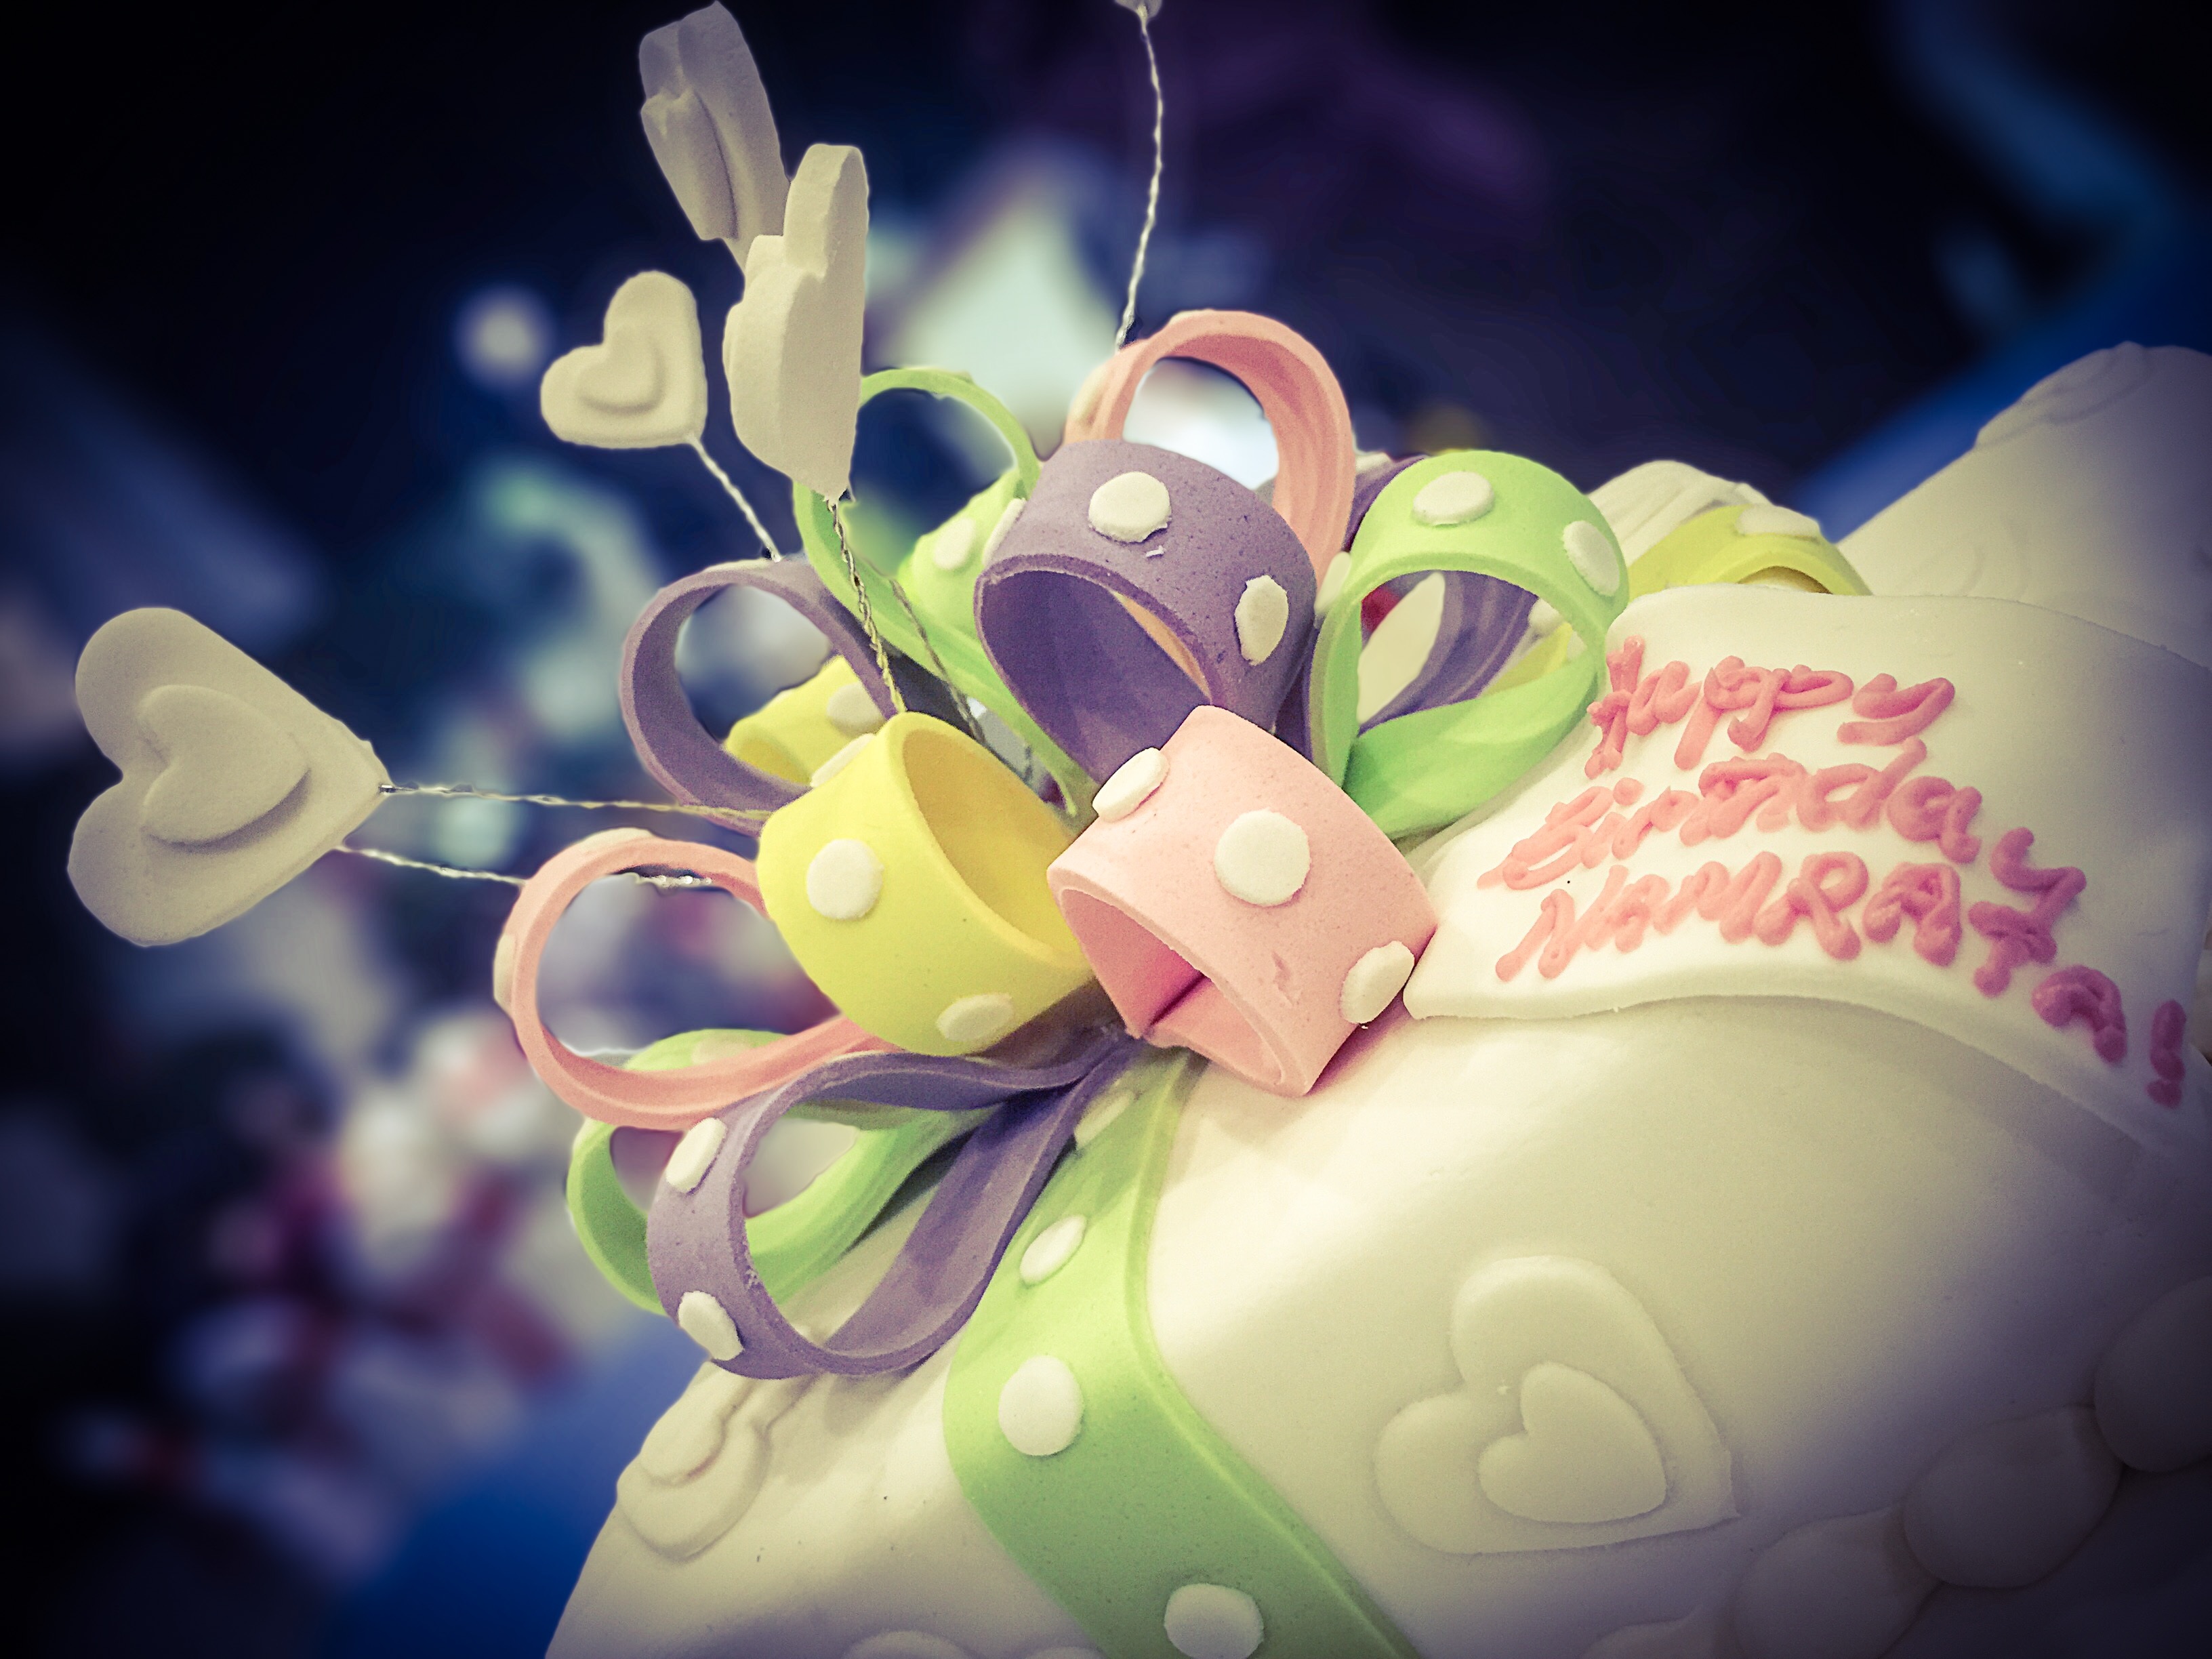 Free photo Baby girl`s birthday cake